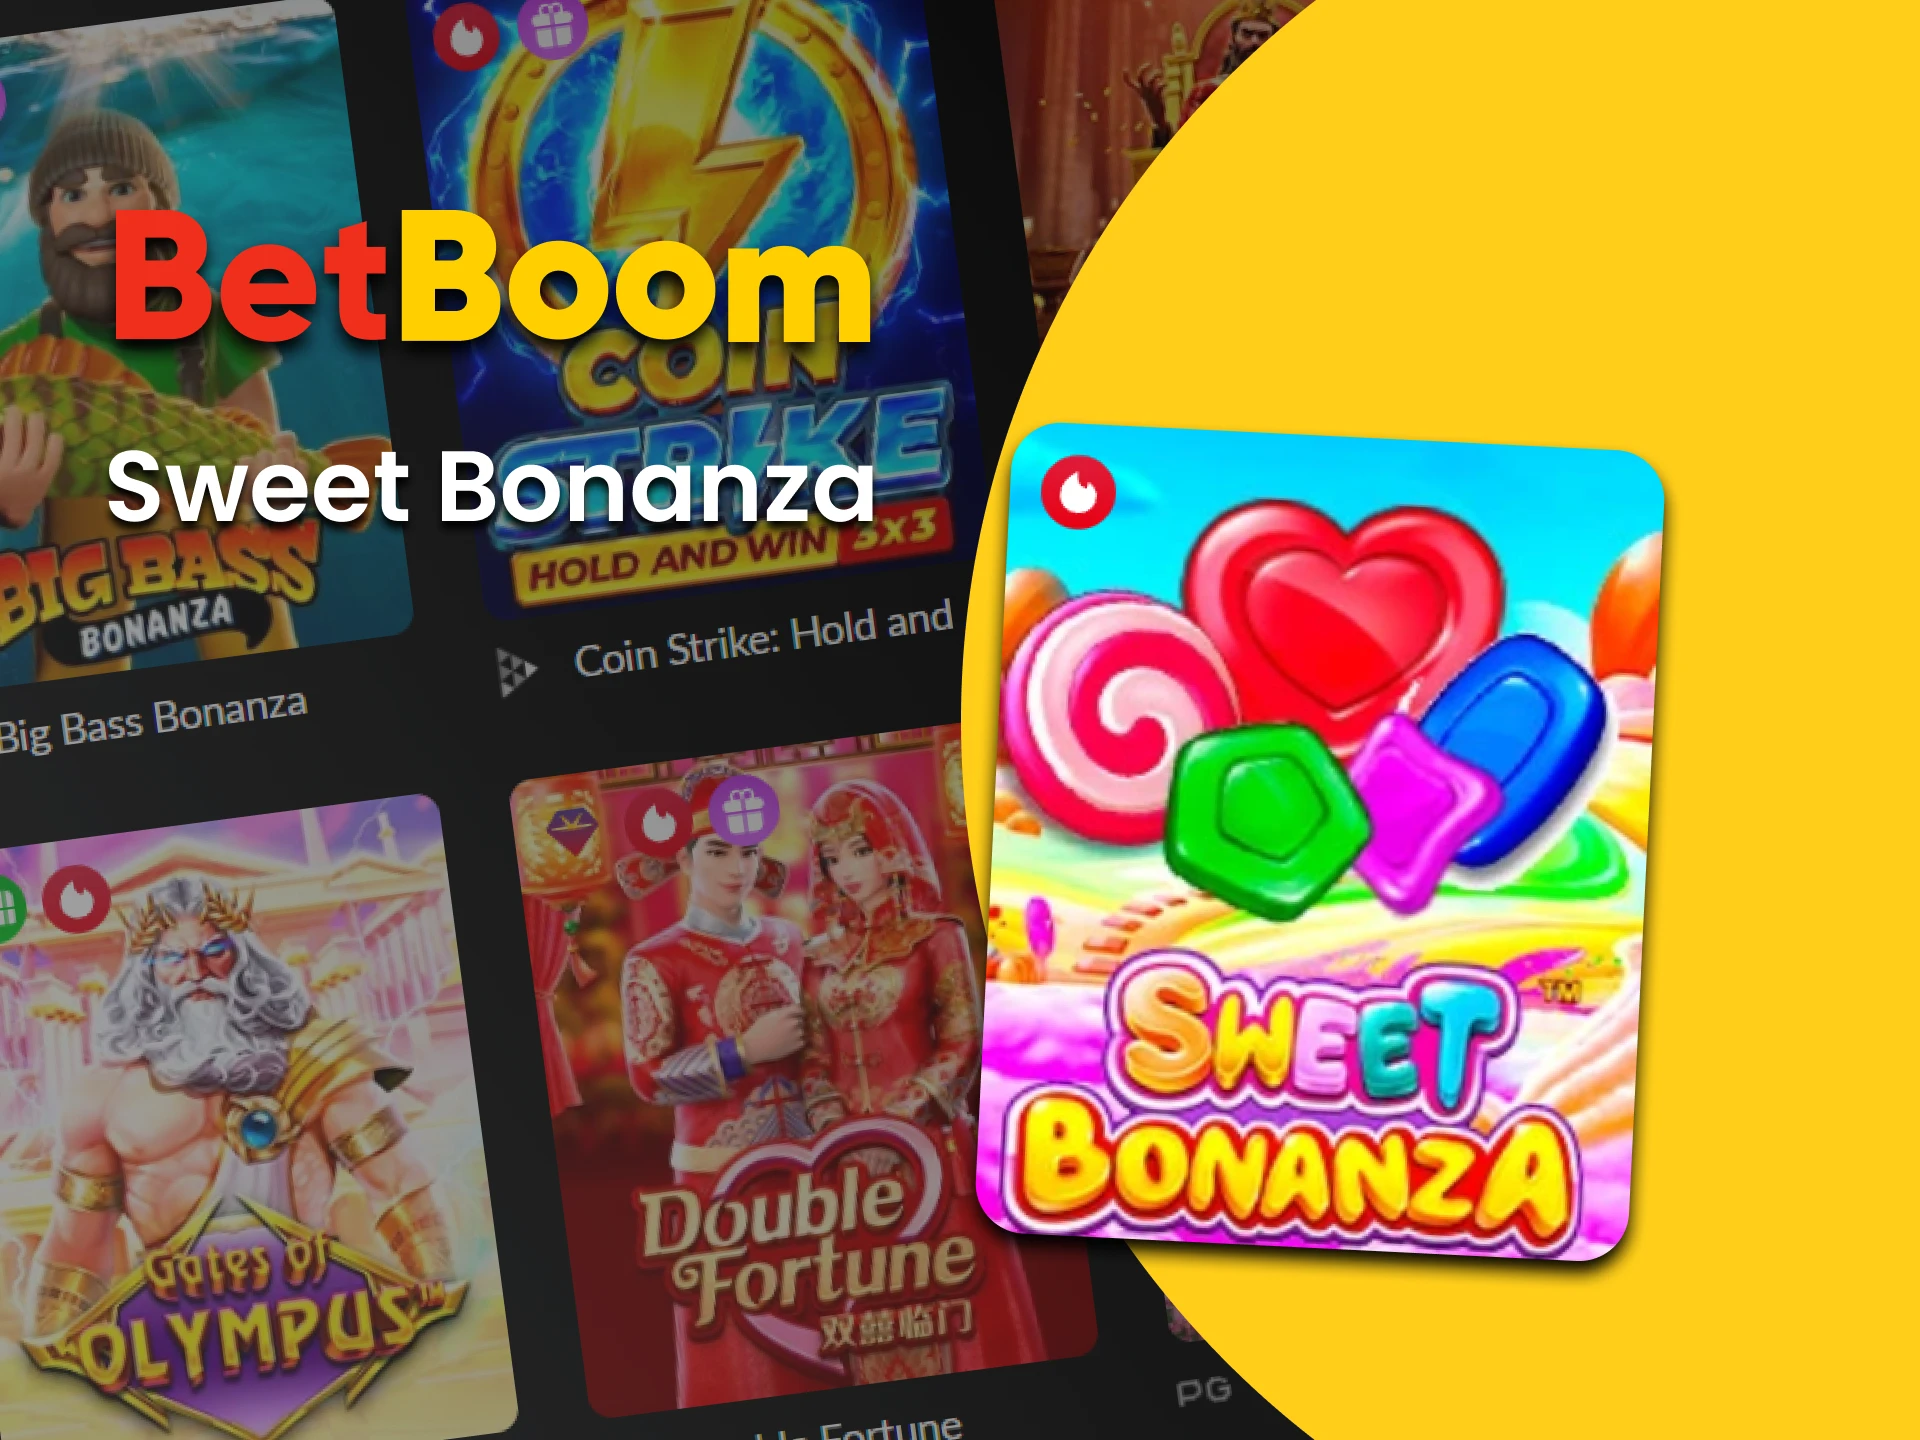 Para jogos de slots no BetBoom, escolha Sweet Bonanza.